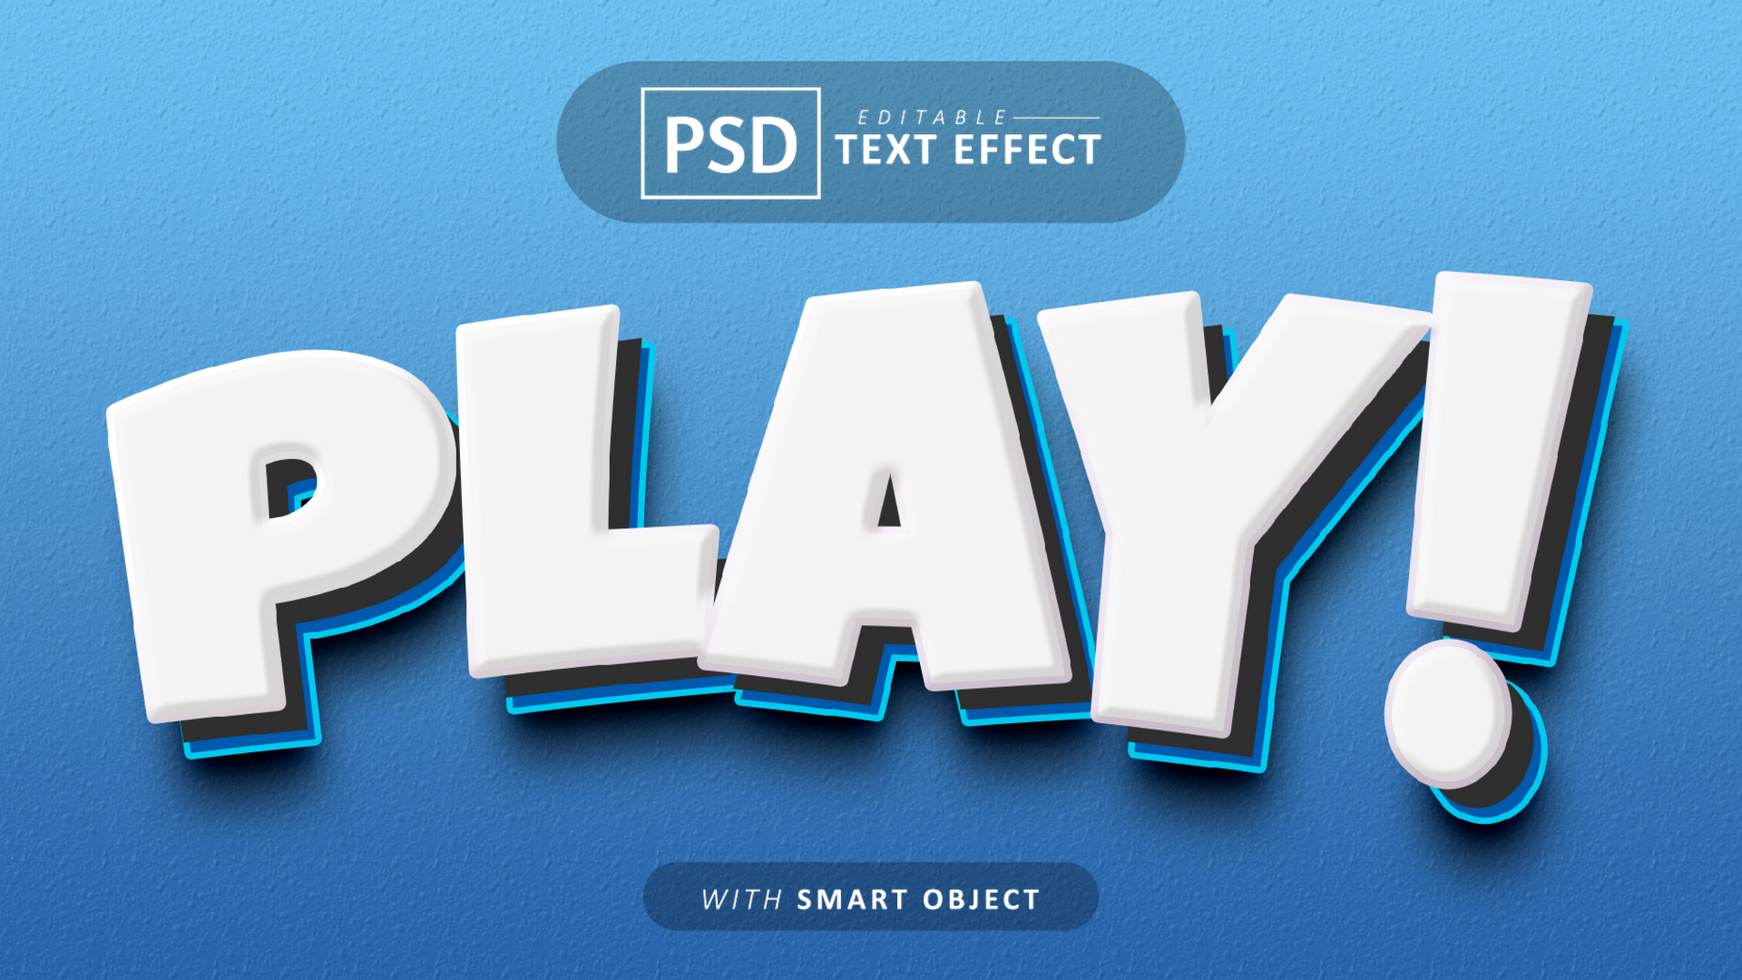 Play cartoon style text effect editable psd